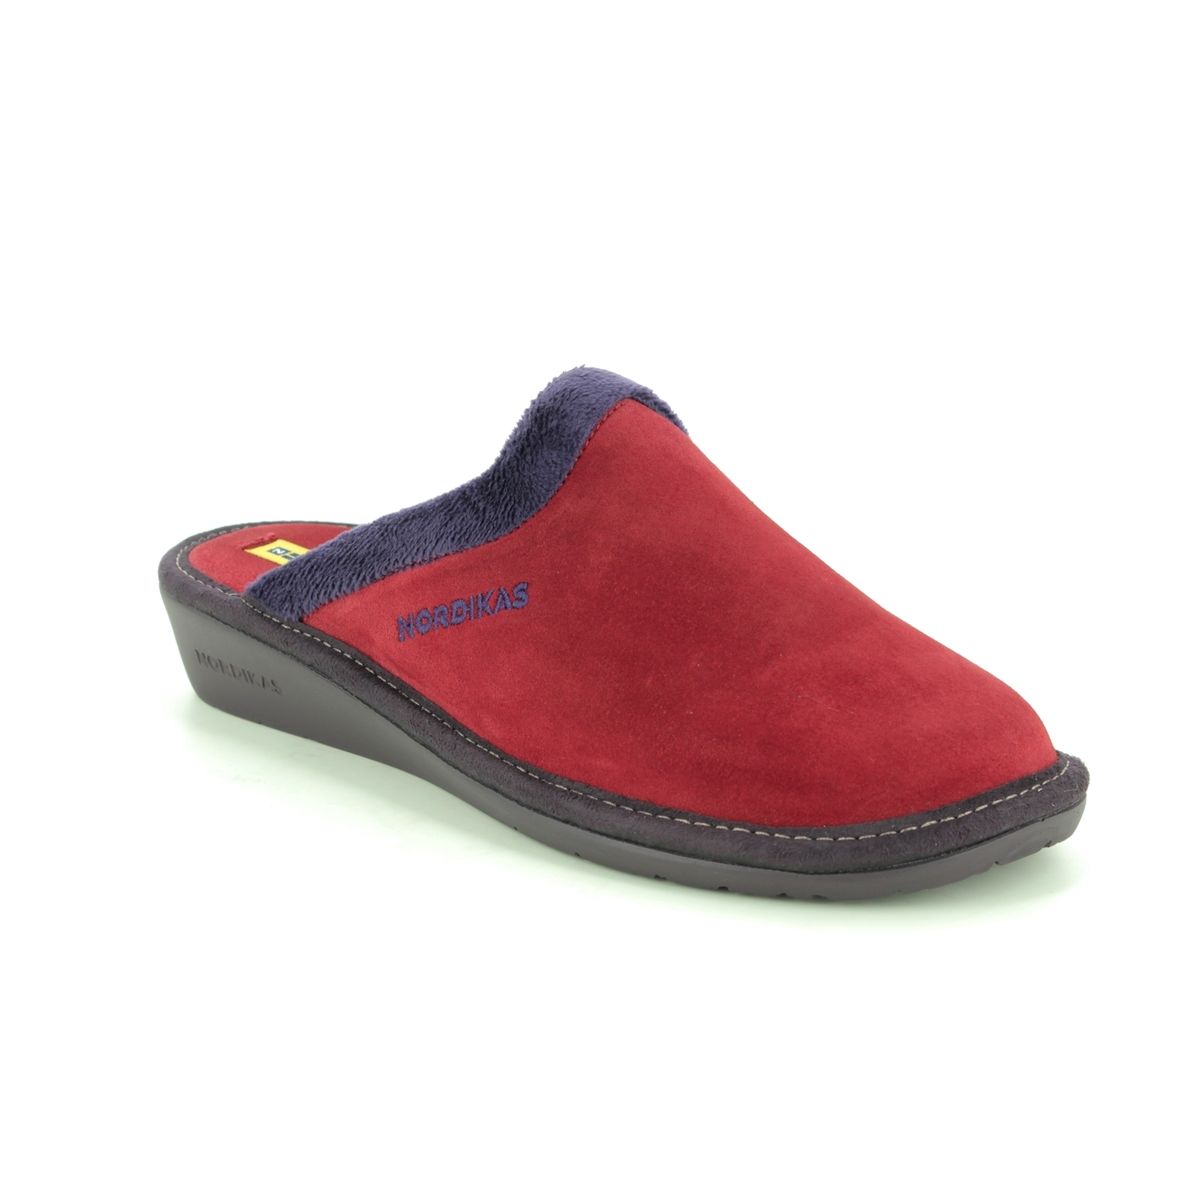 Nordikas Musue 95 234-8 Red suede slippers